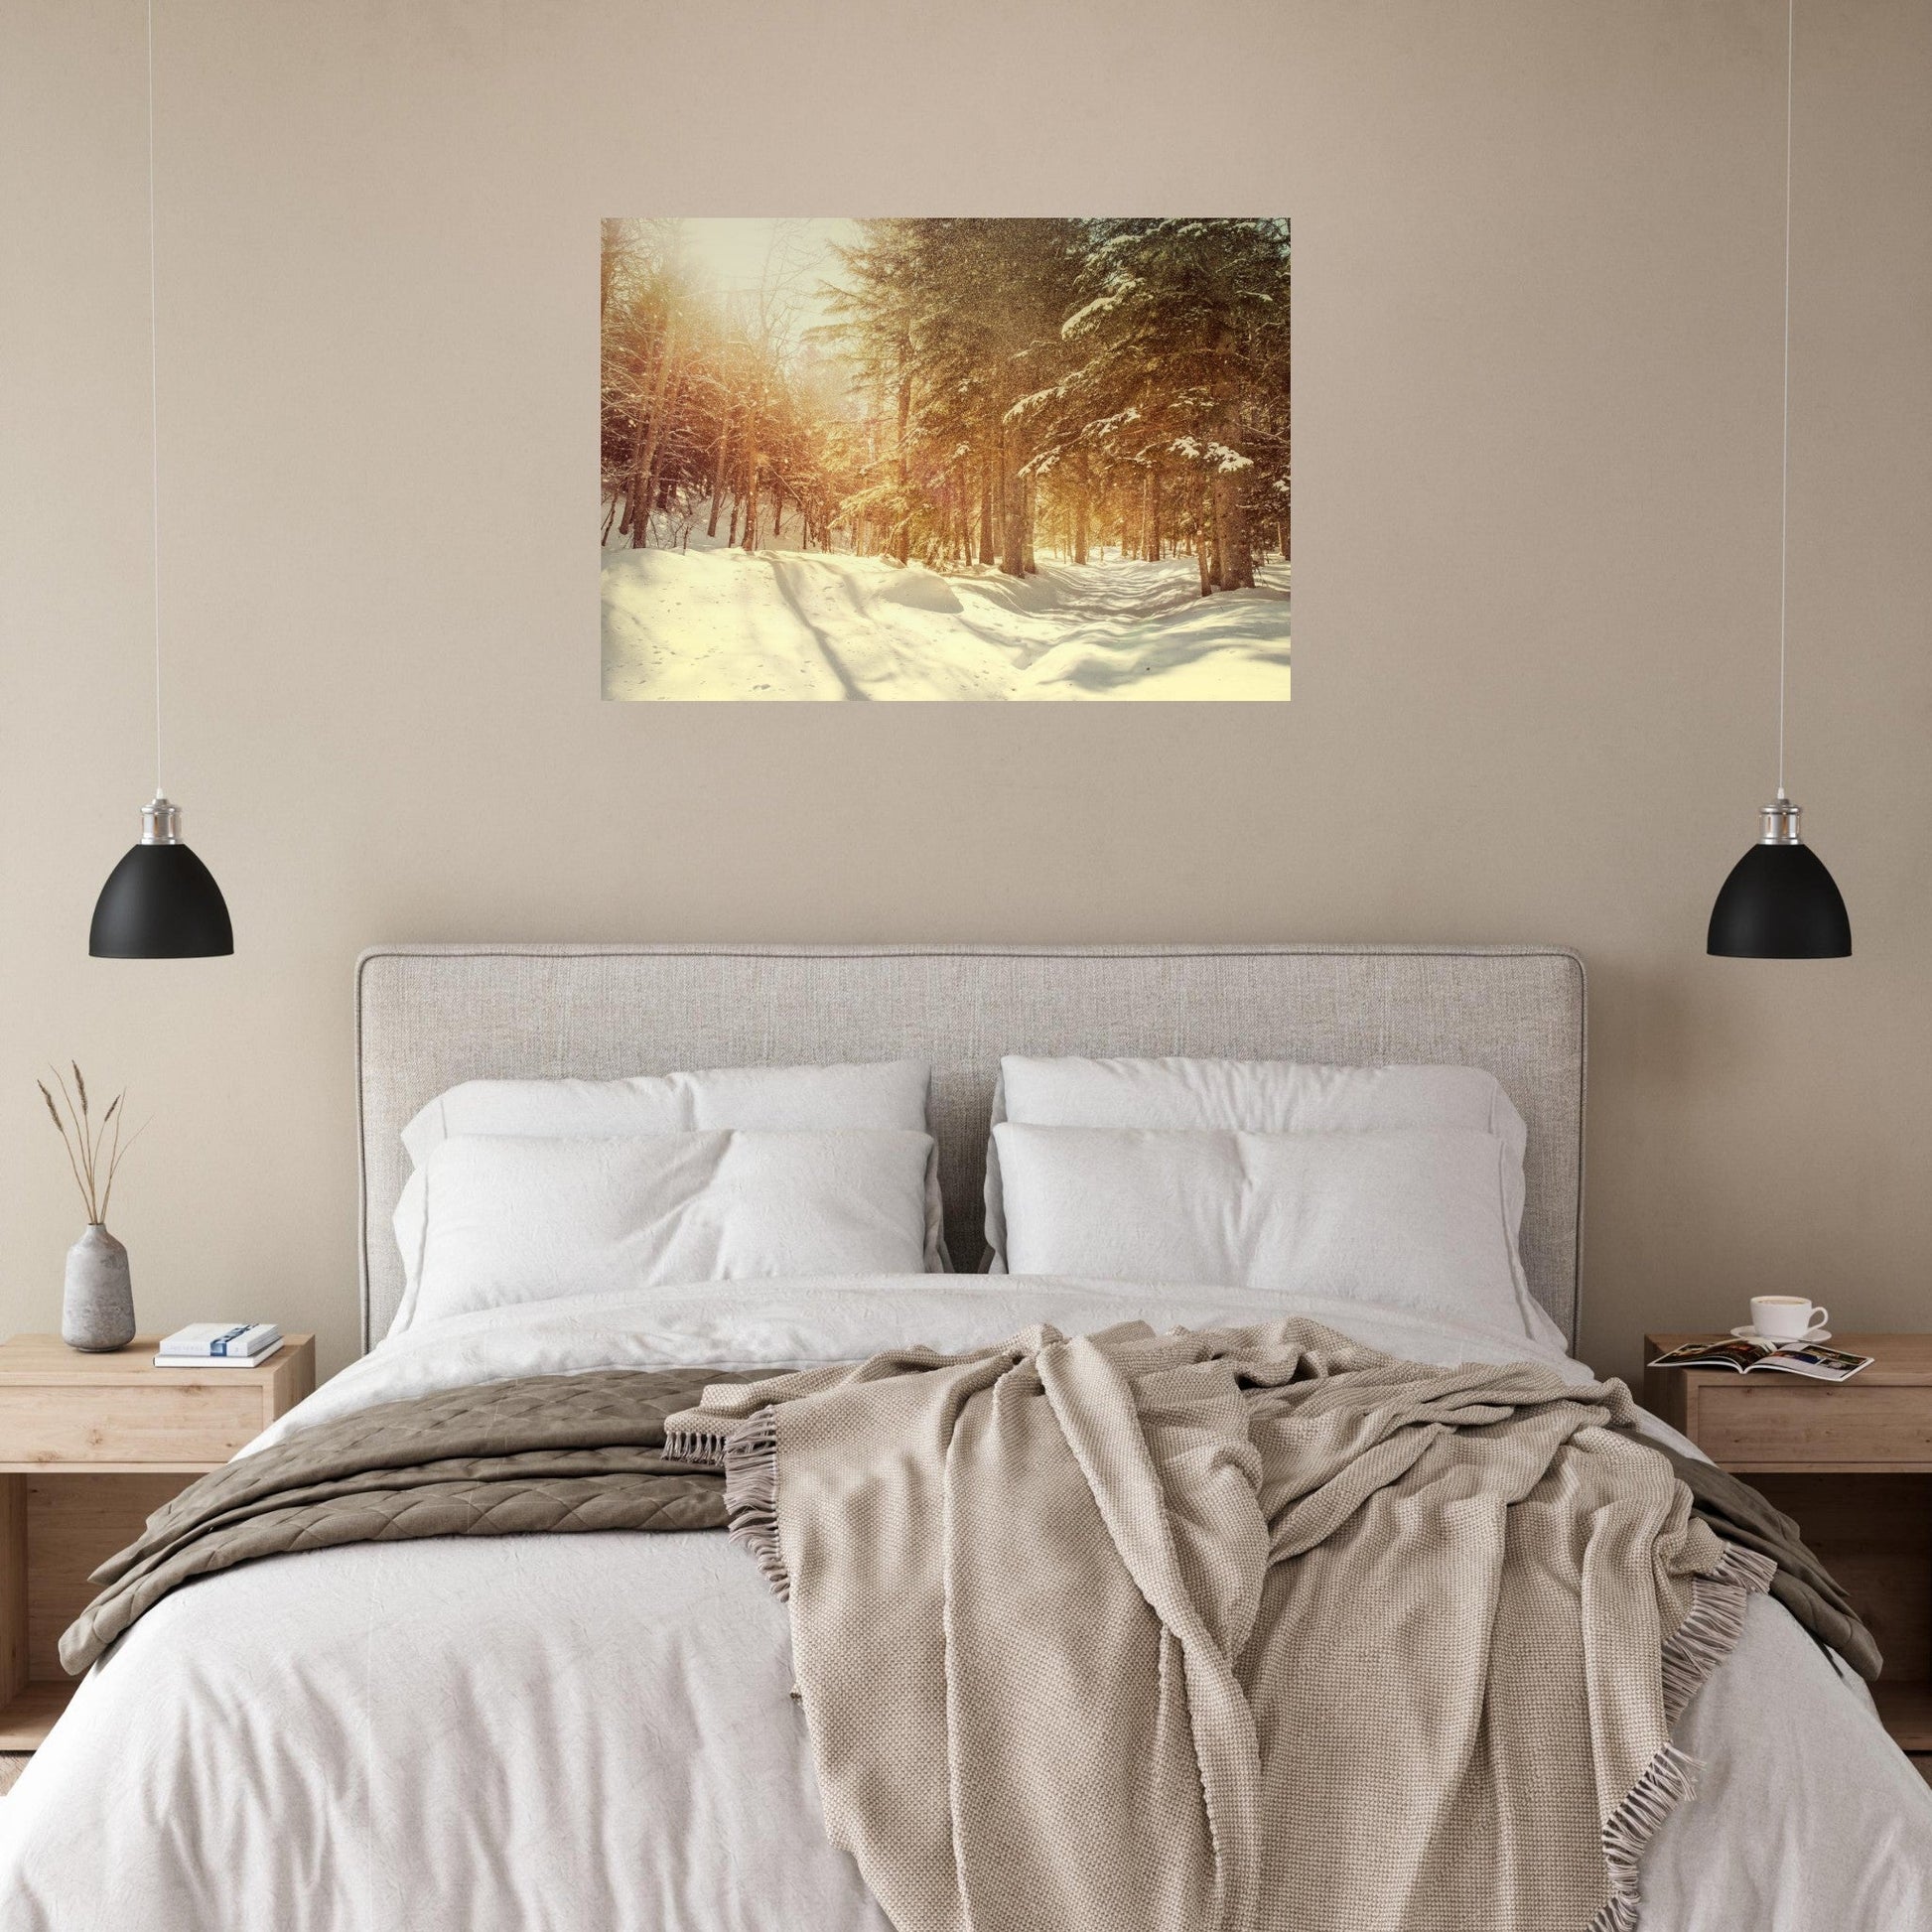 Vente Photo d'une foret enchantée sous la neige - Tableau photo alu montagne